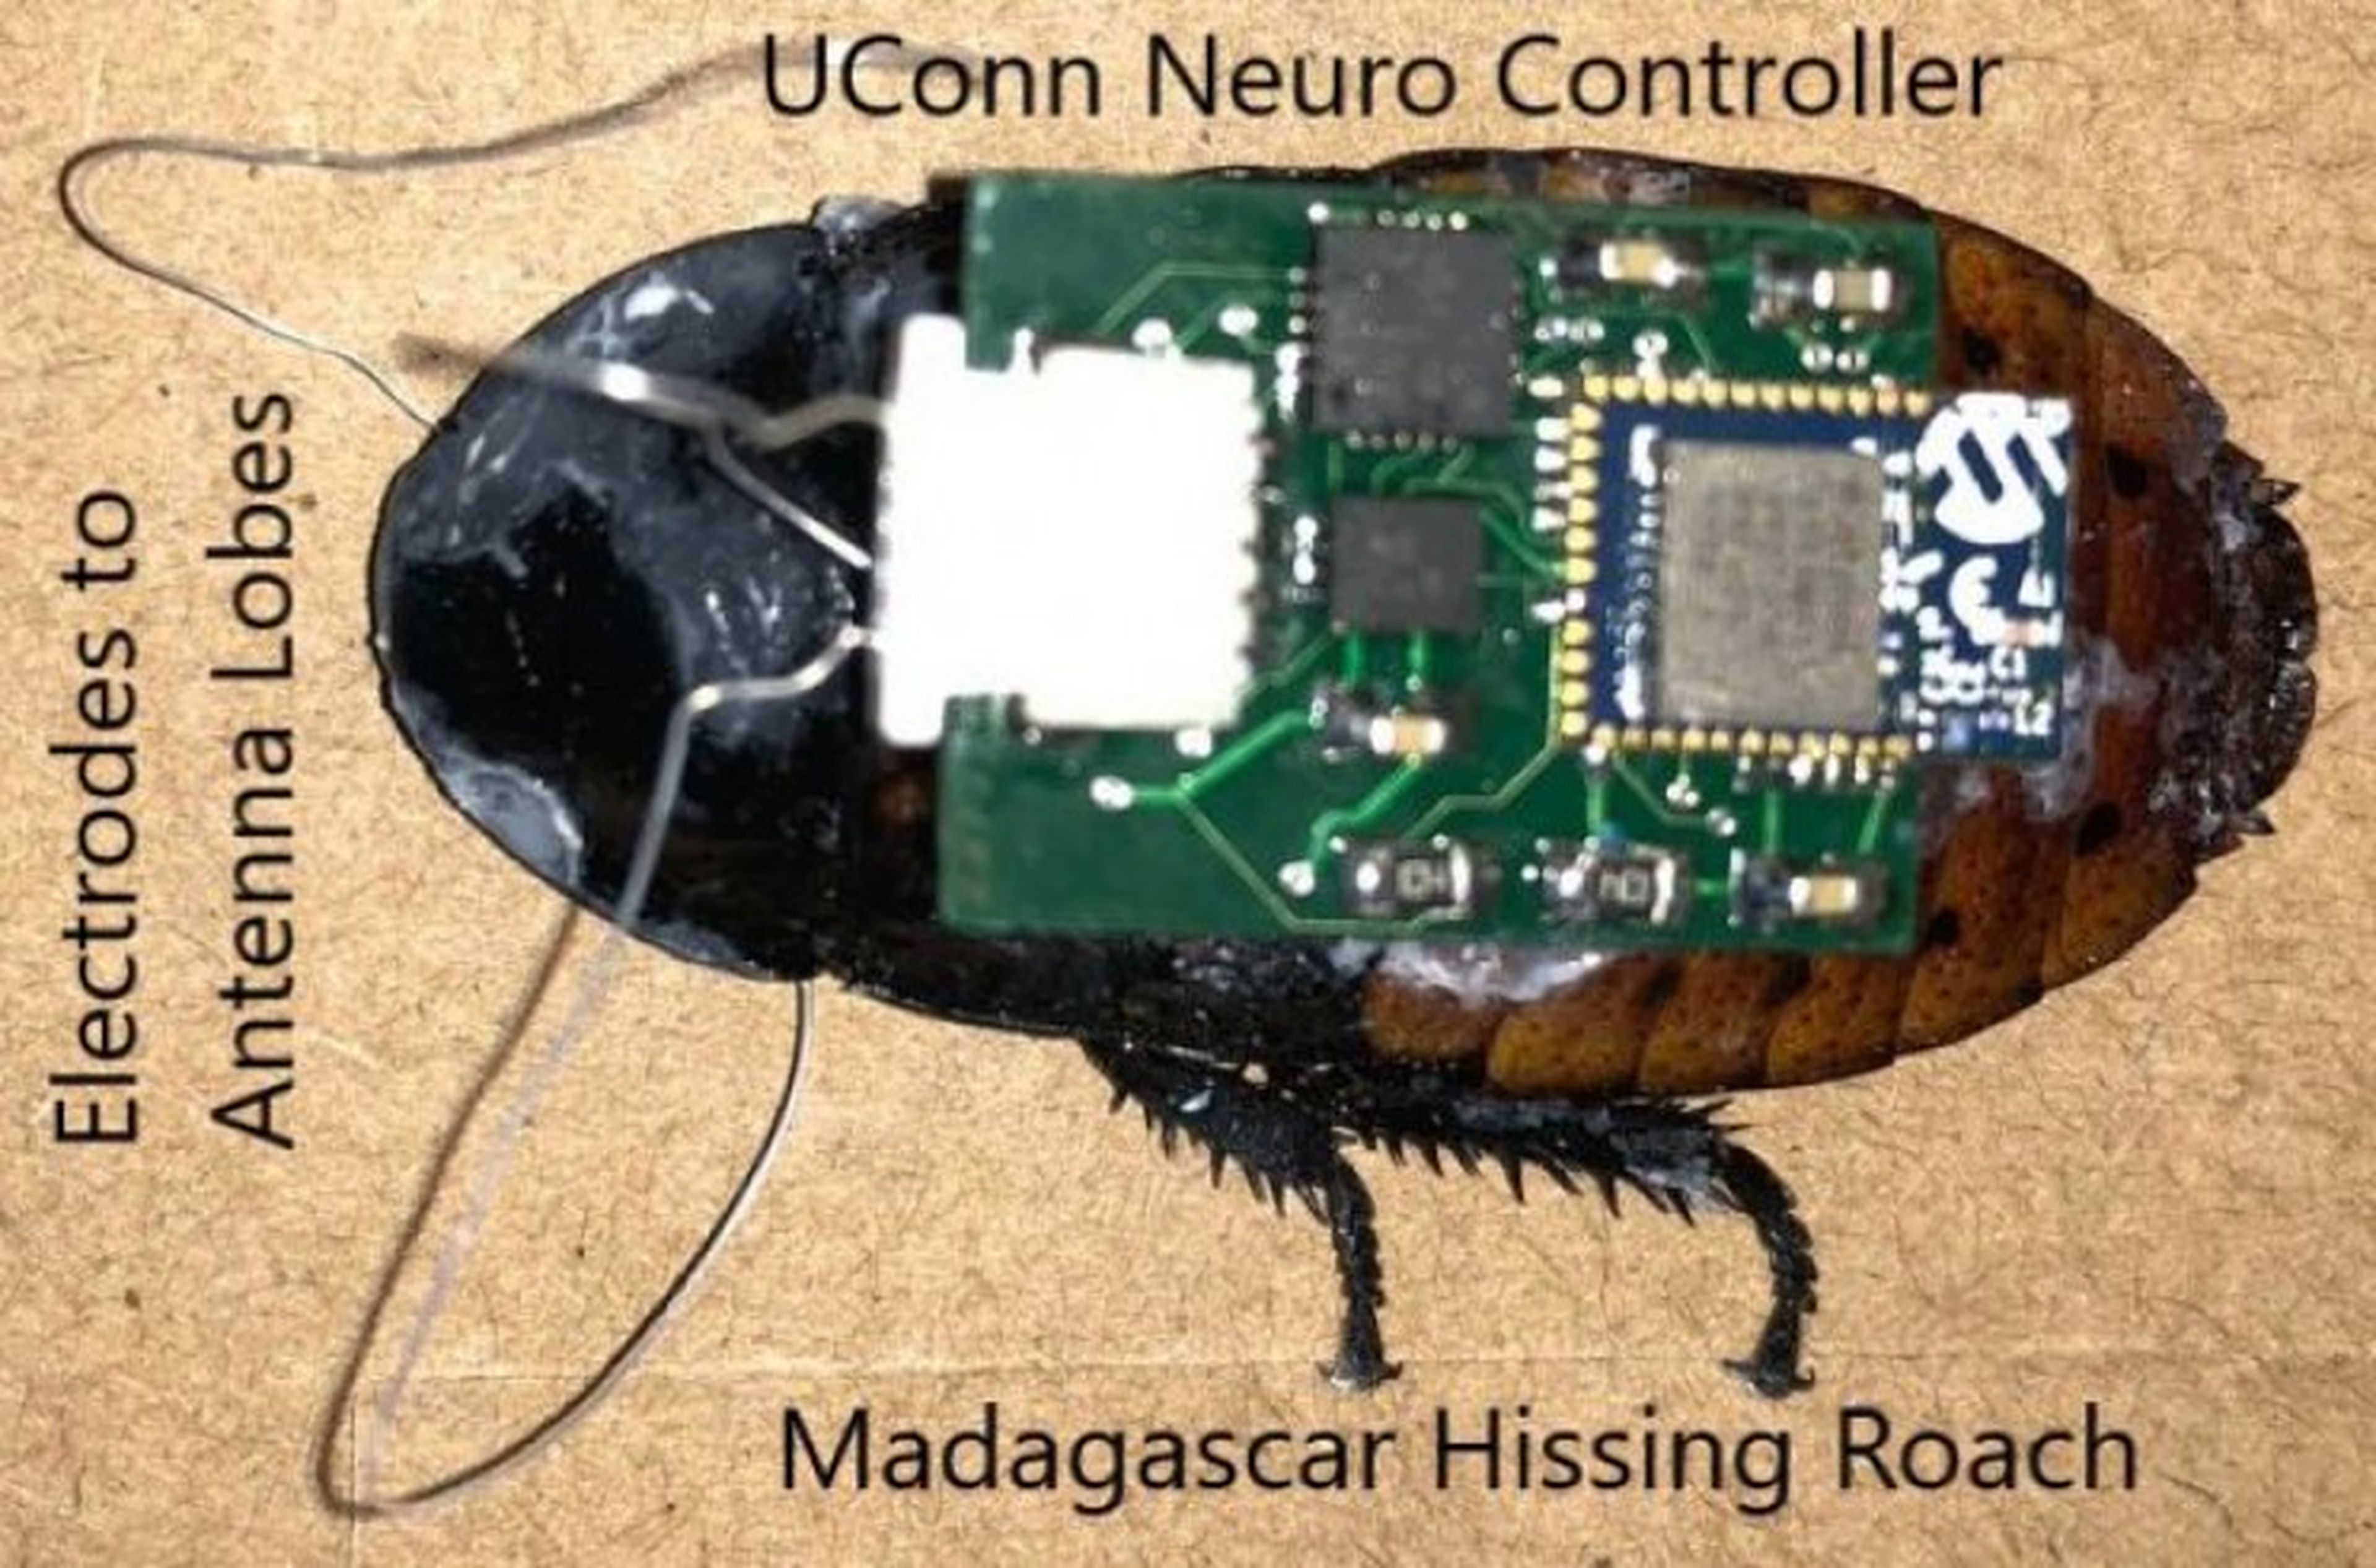 Cucarachas robot